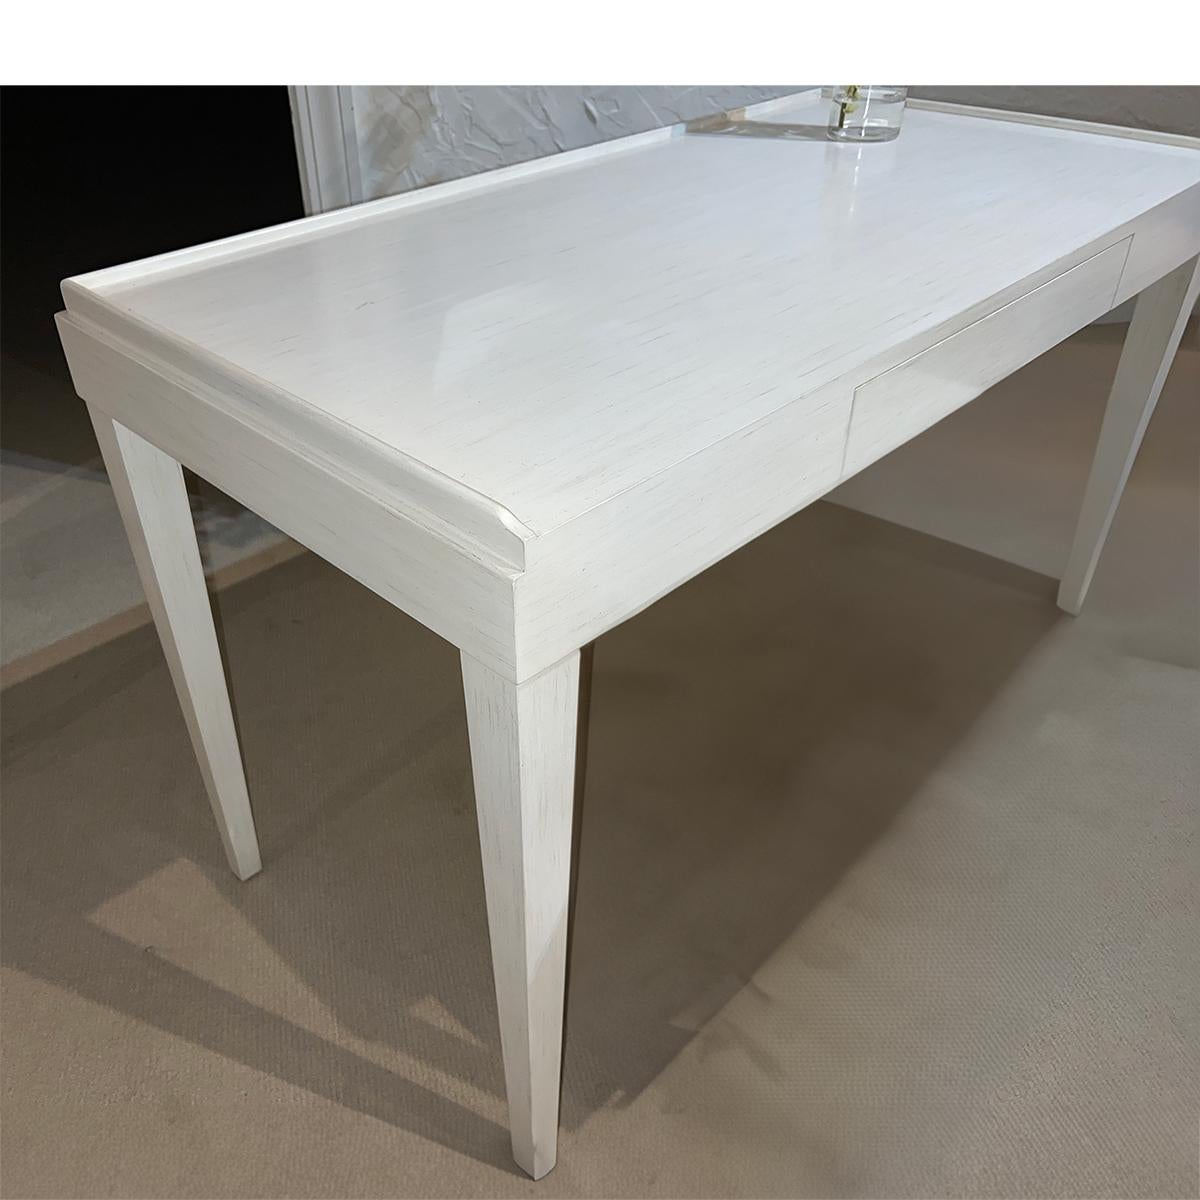 Vietnamese Mid-Century Modern Style Desk - Drift White For Sale